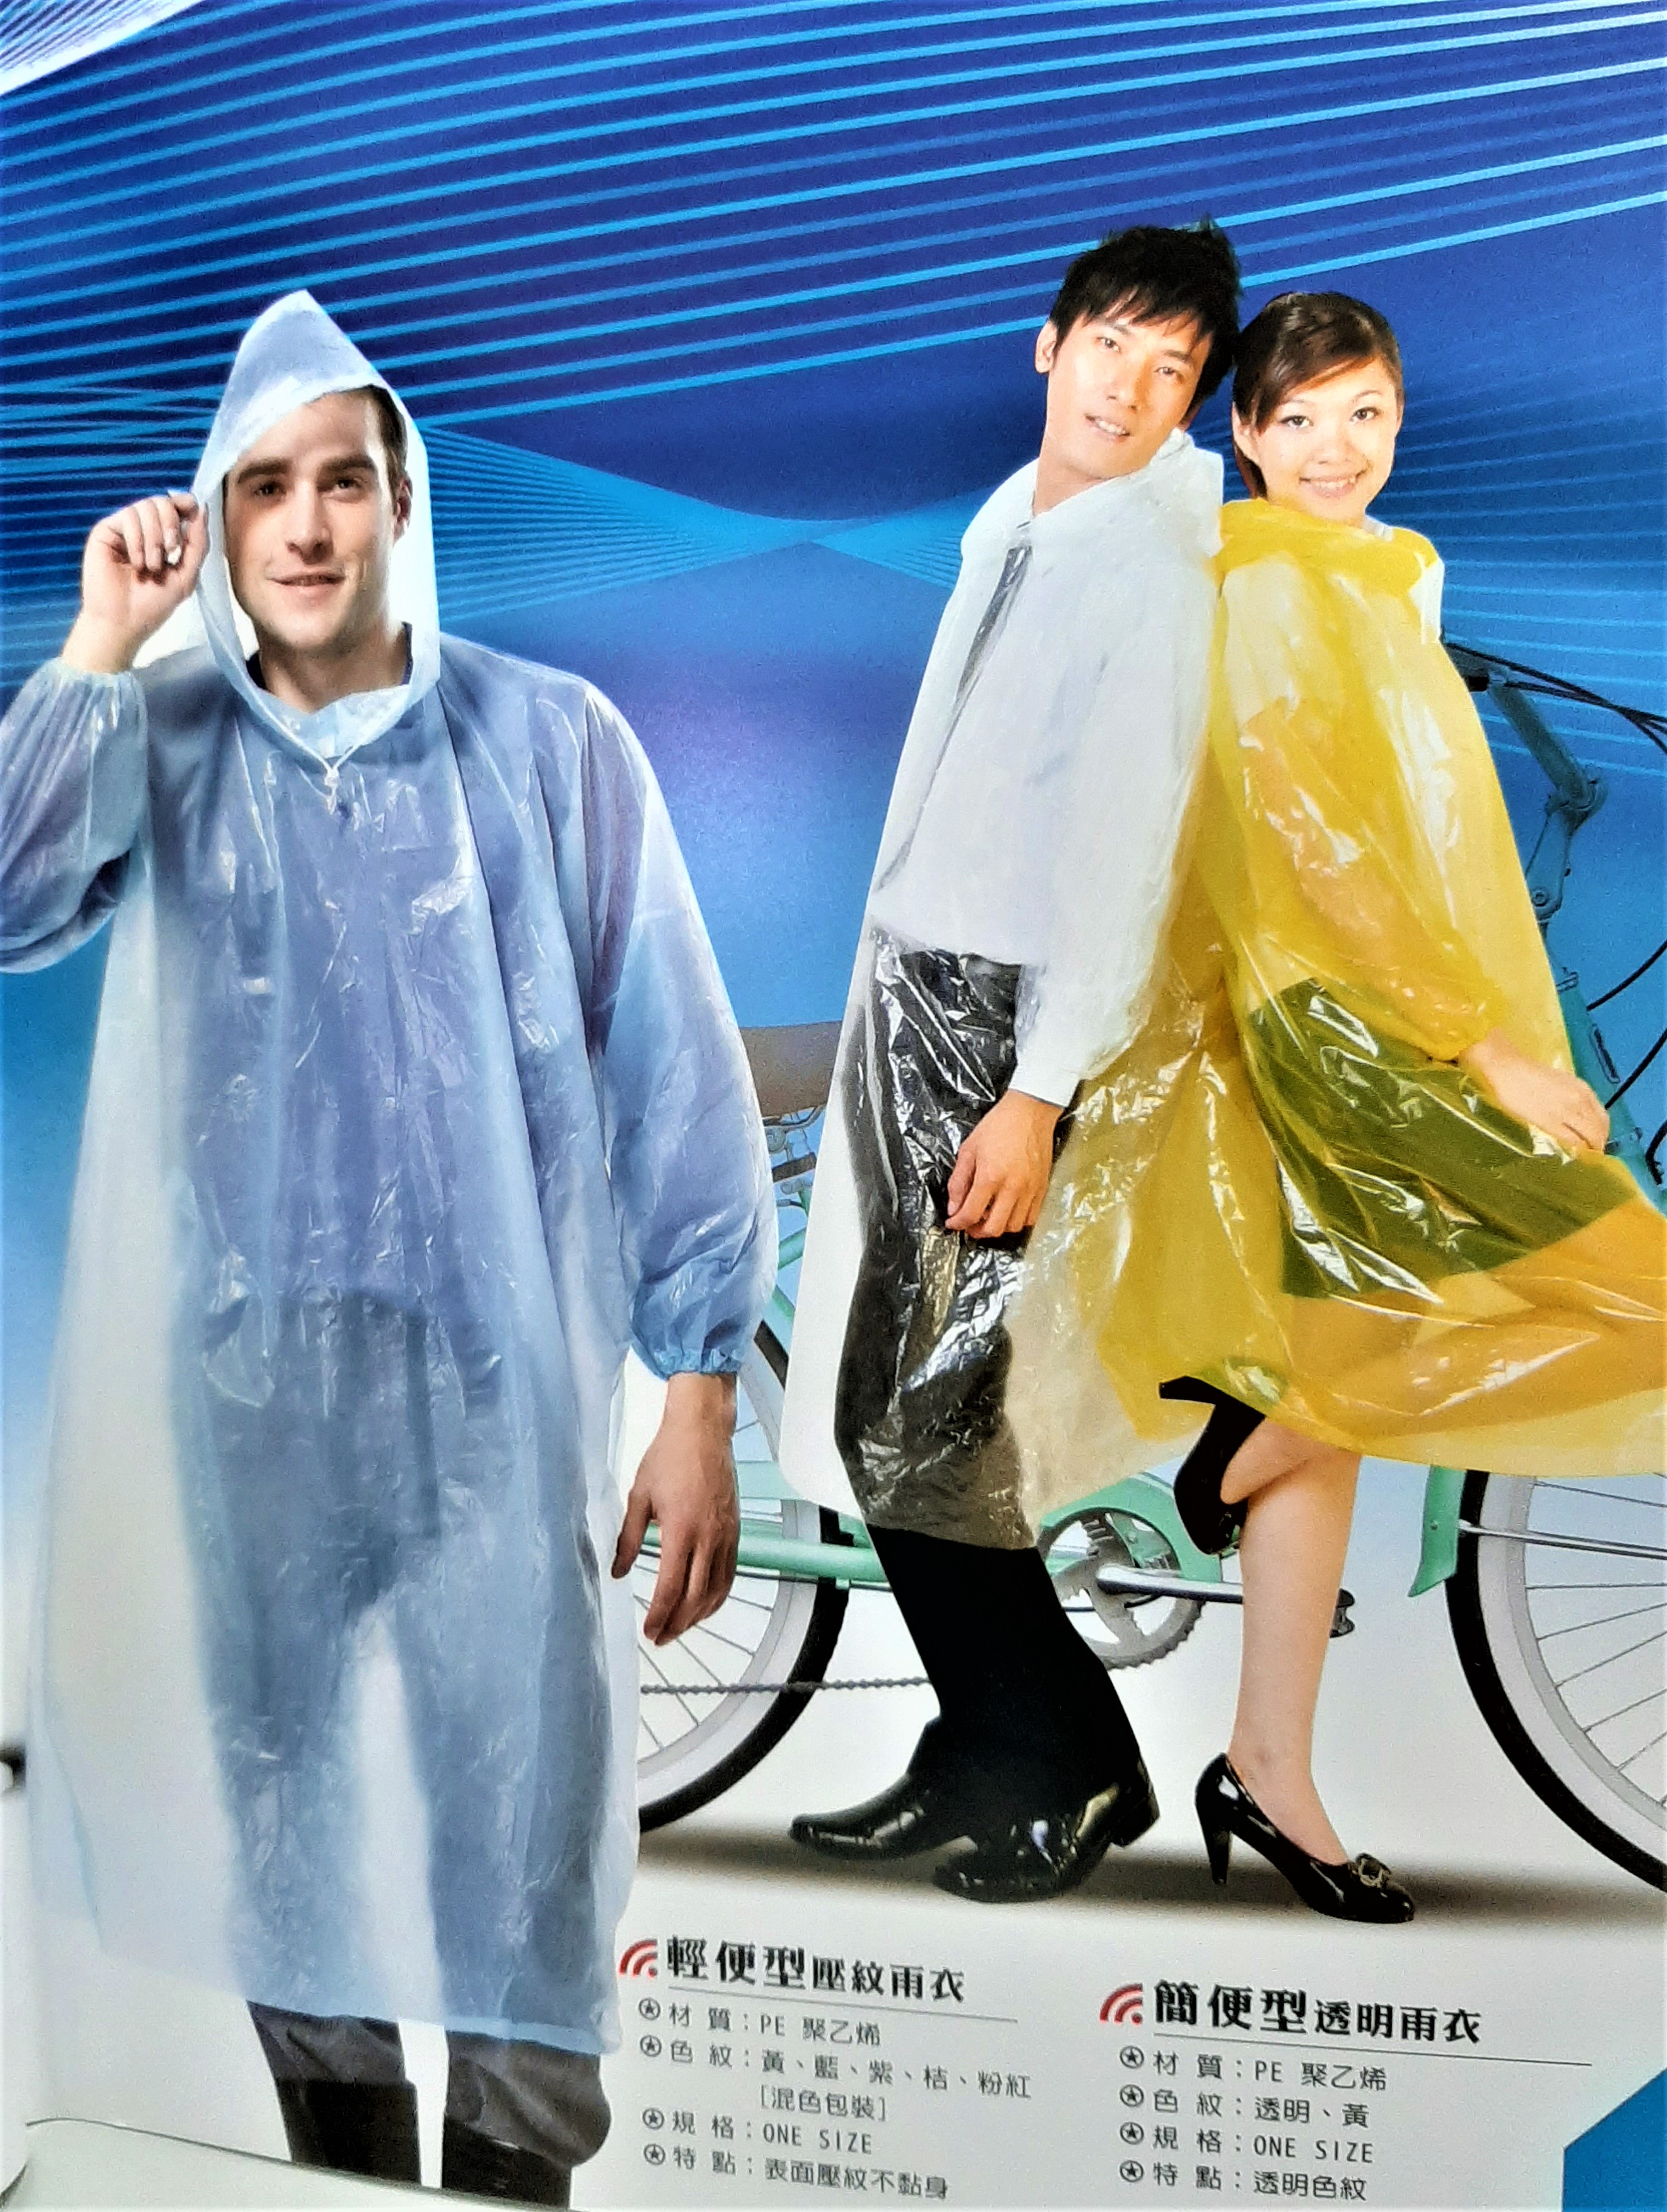 達-輕便壓紋 / 簡便黃/透明雨衣